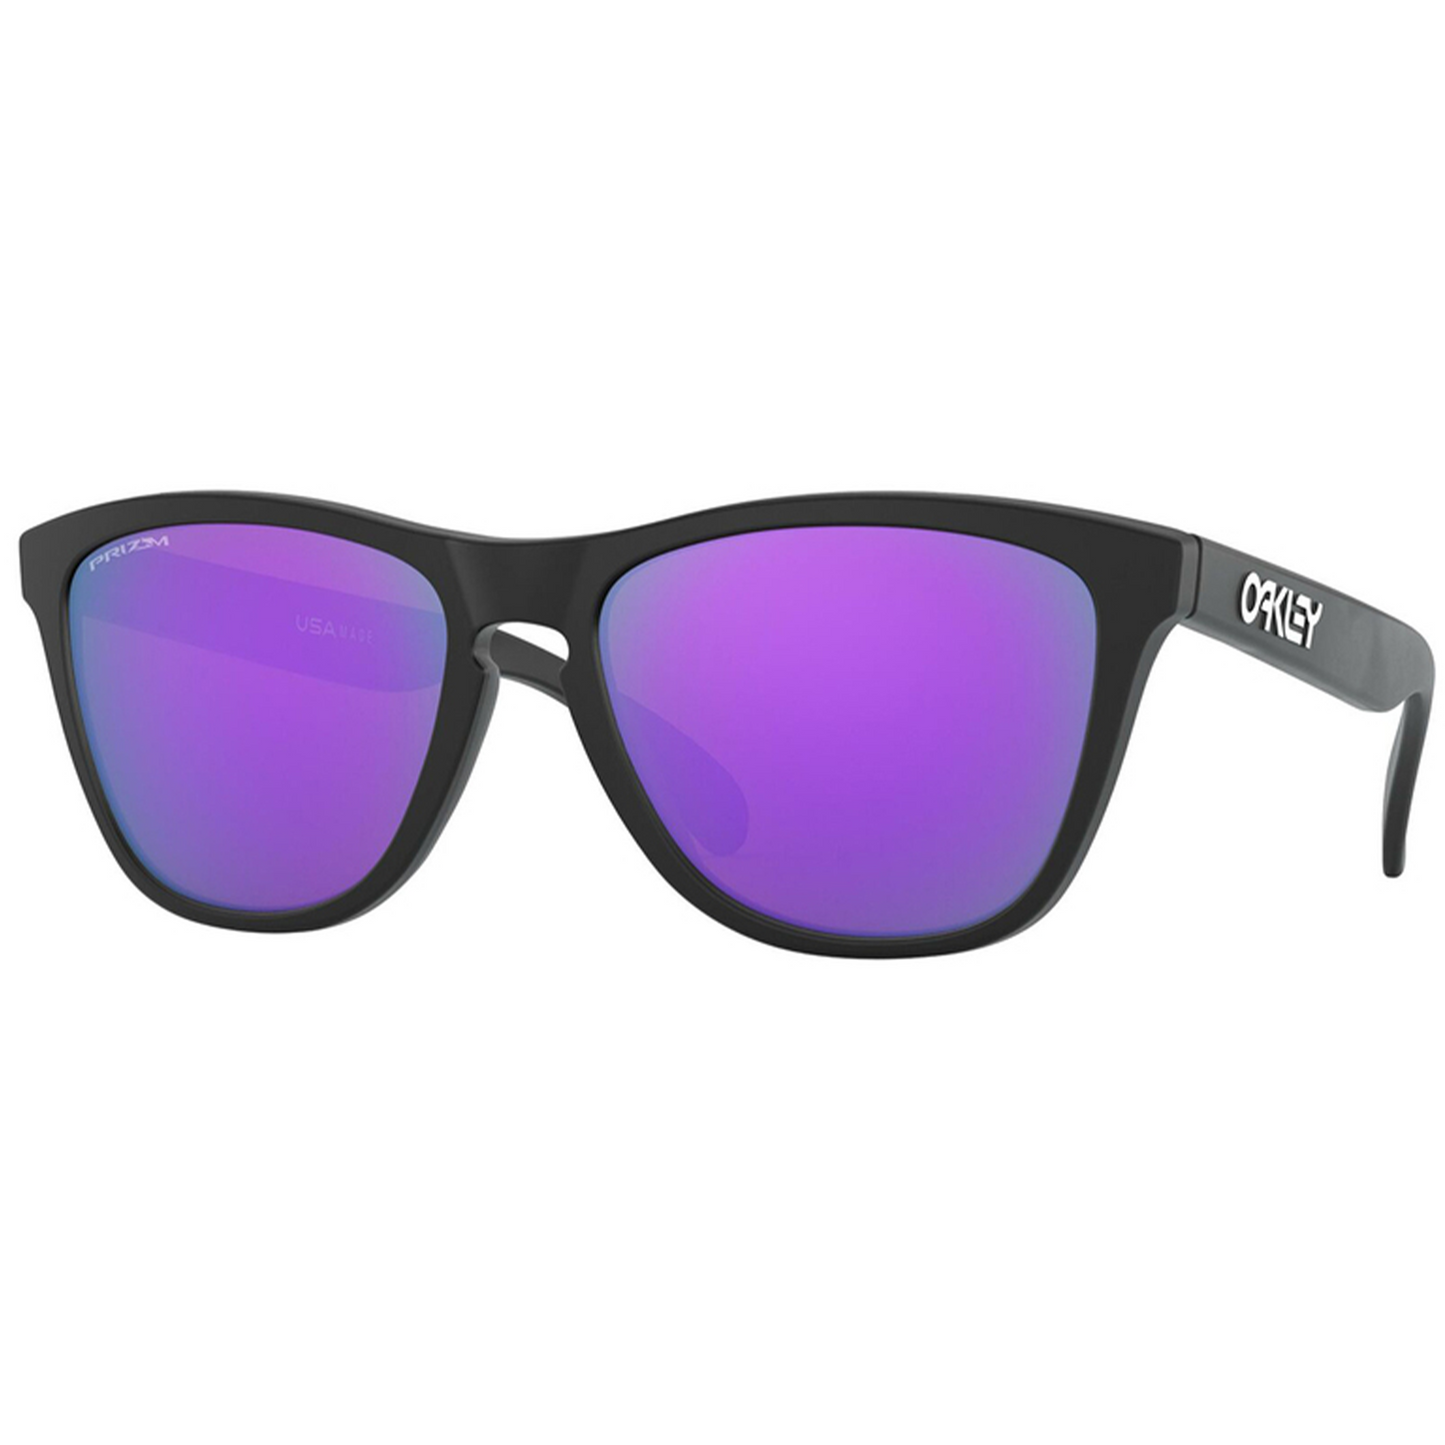 Oakley Frogskins Sunglasses (Matte Black) Prizm Violet Lens